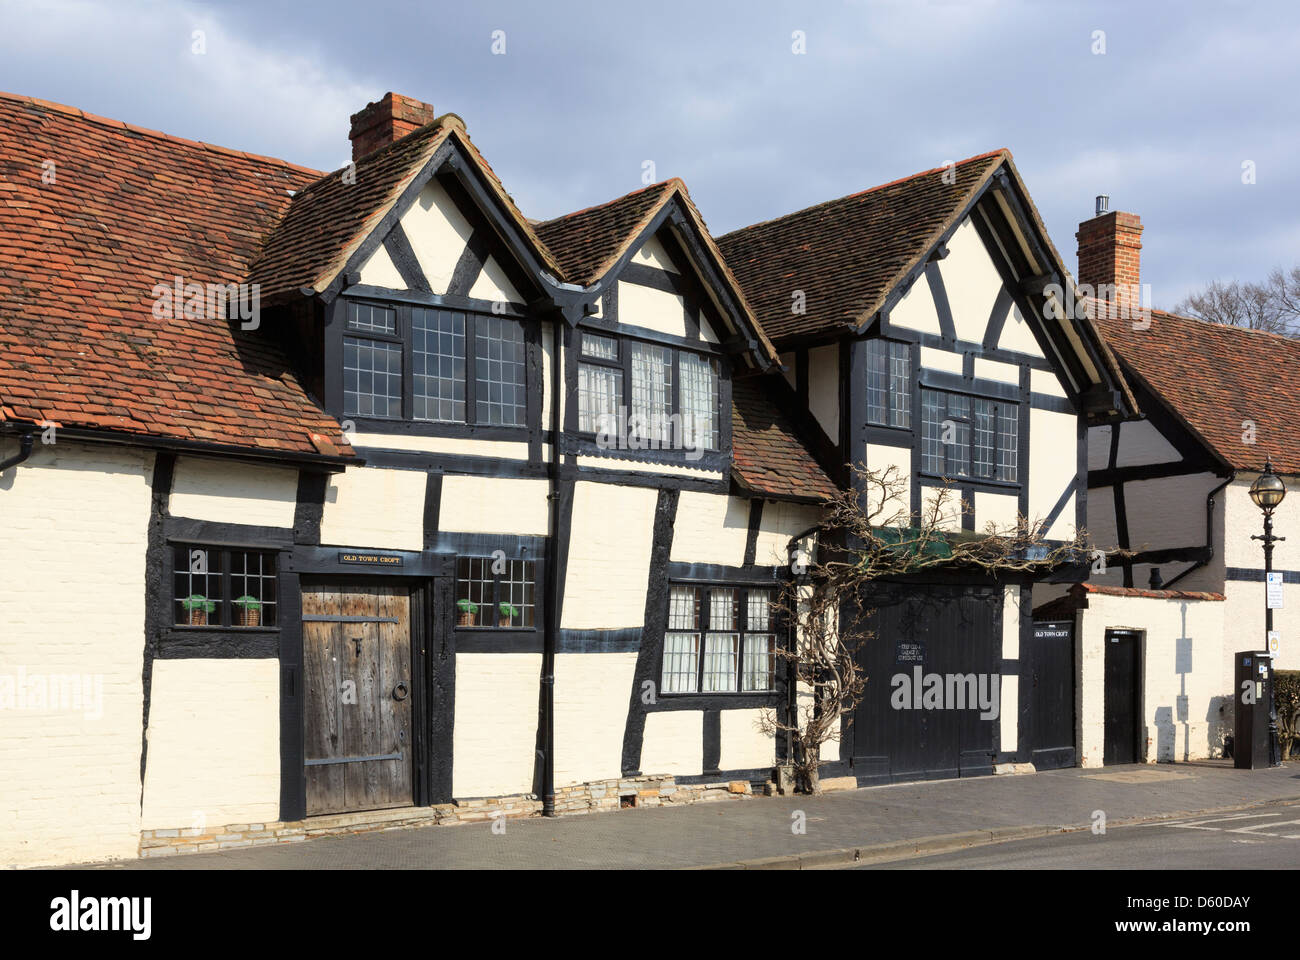 16Th Century Old Town Croft casa de madera del edificio de grado II en Stratford-upon-Avon, Warwickshire, Inglaterra, Reino Unido, Gran Bretaña Foto de stock